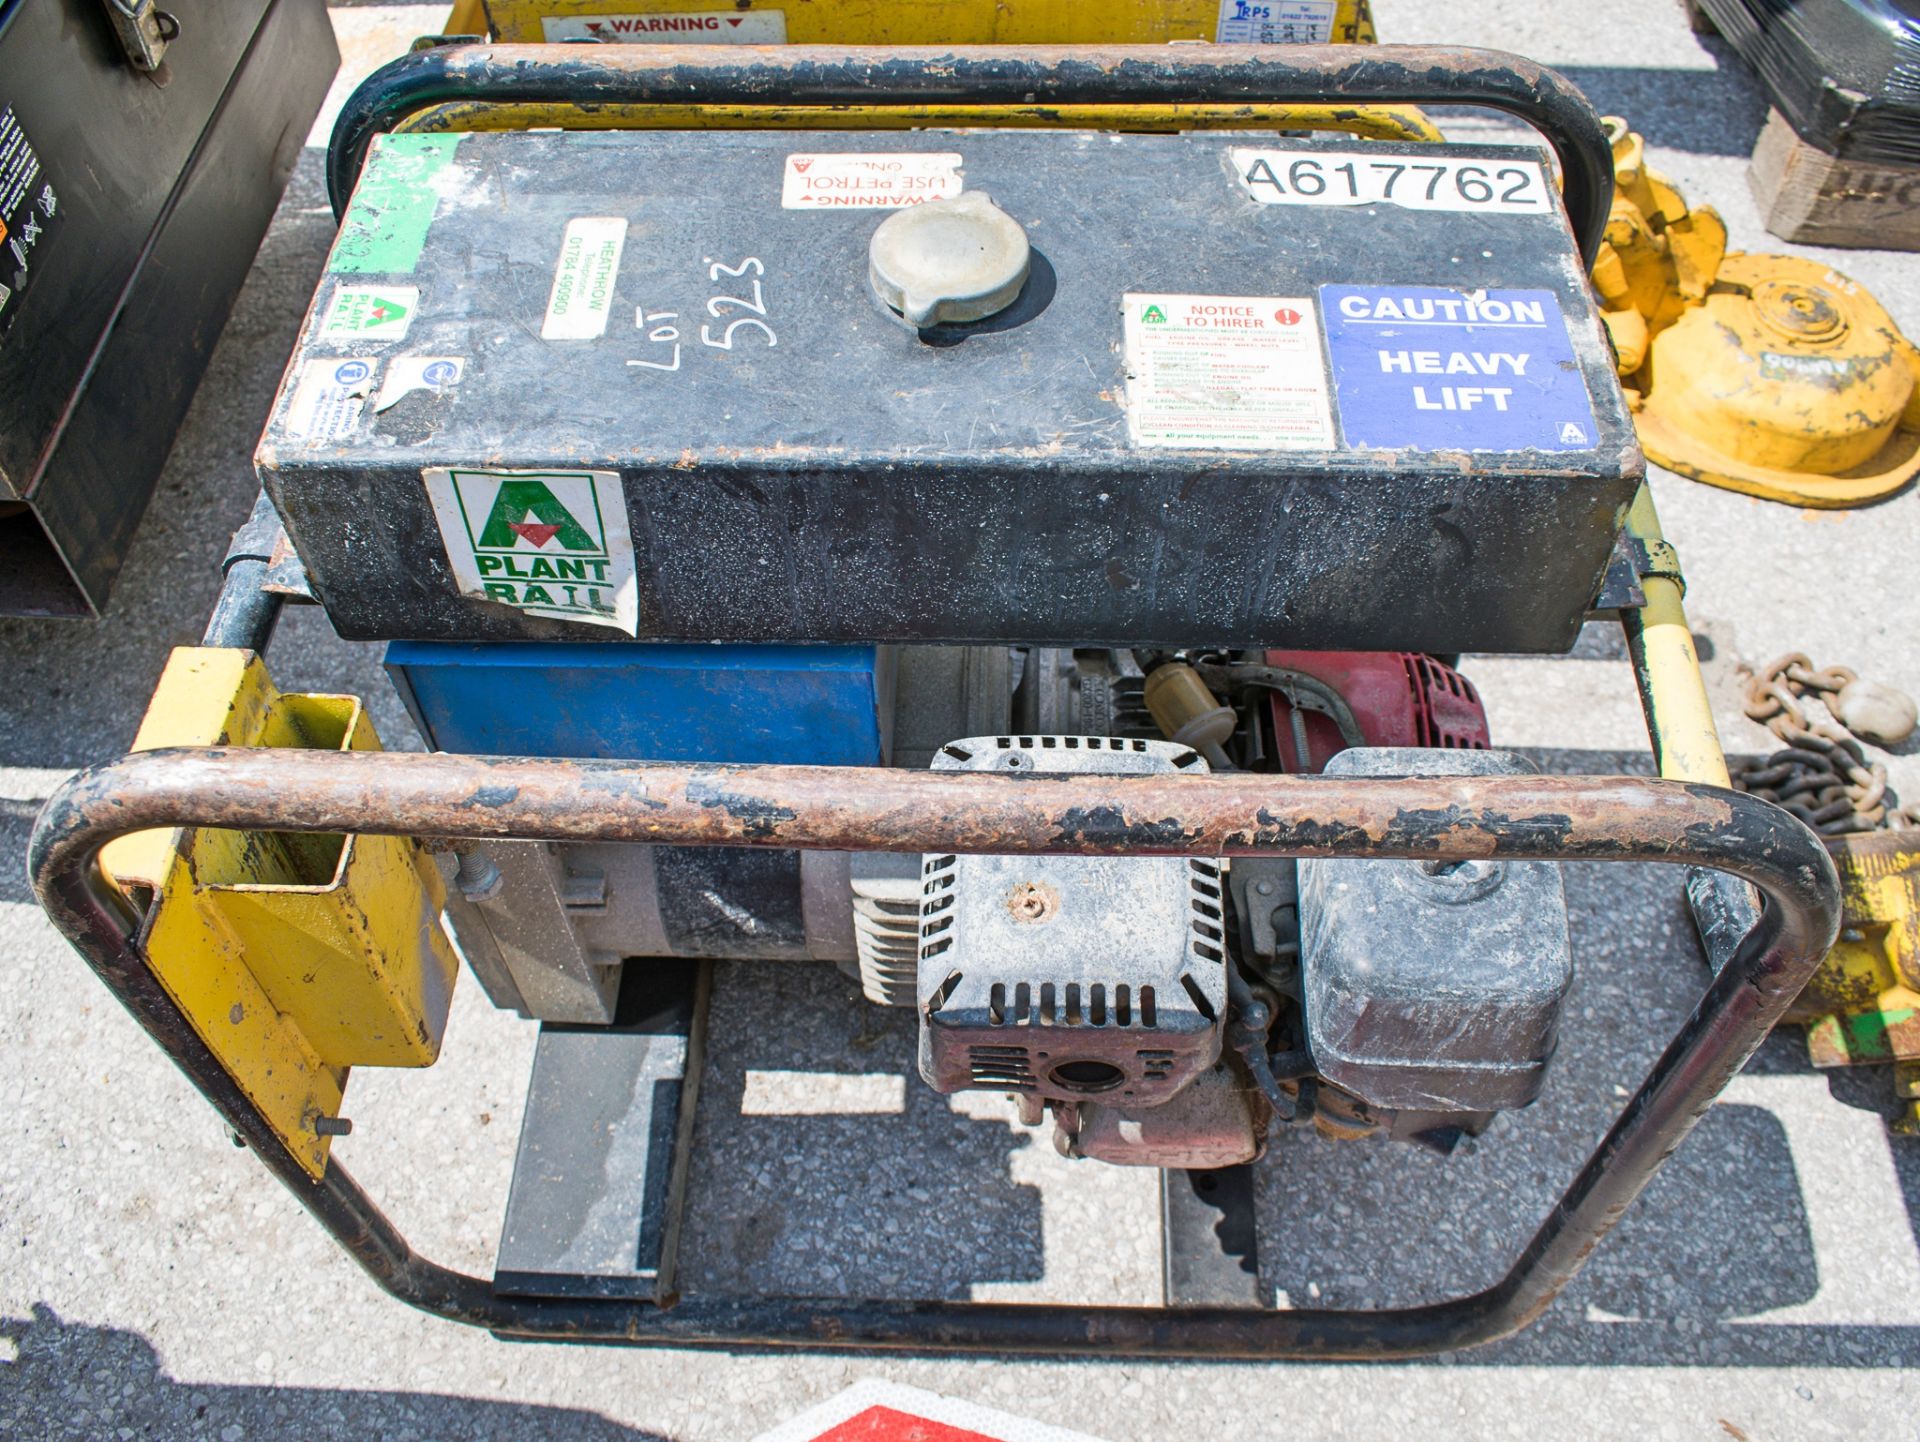 Petrol driven generator A617762